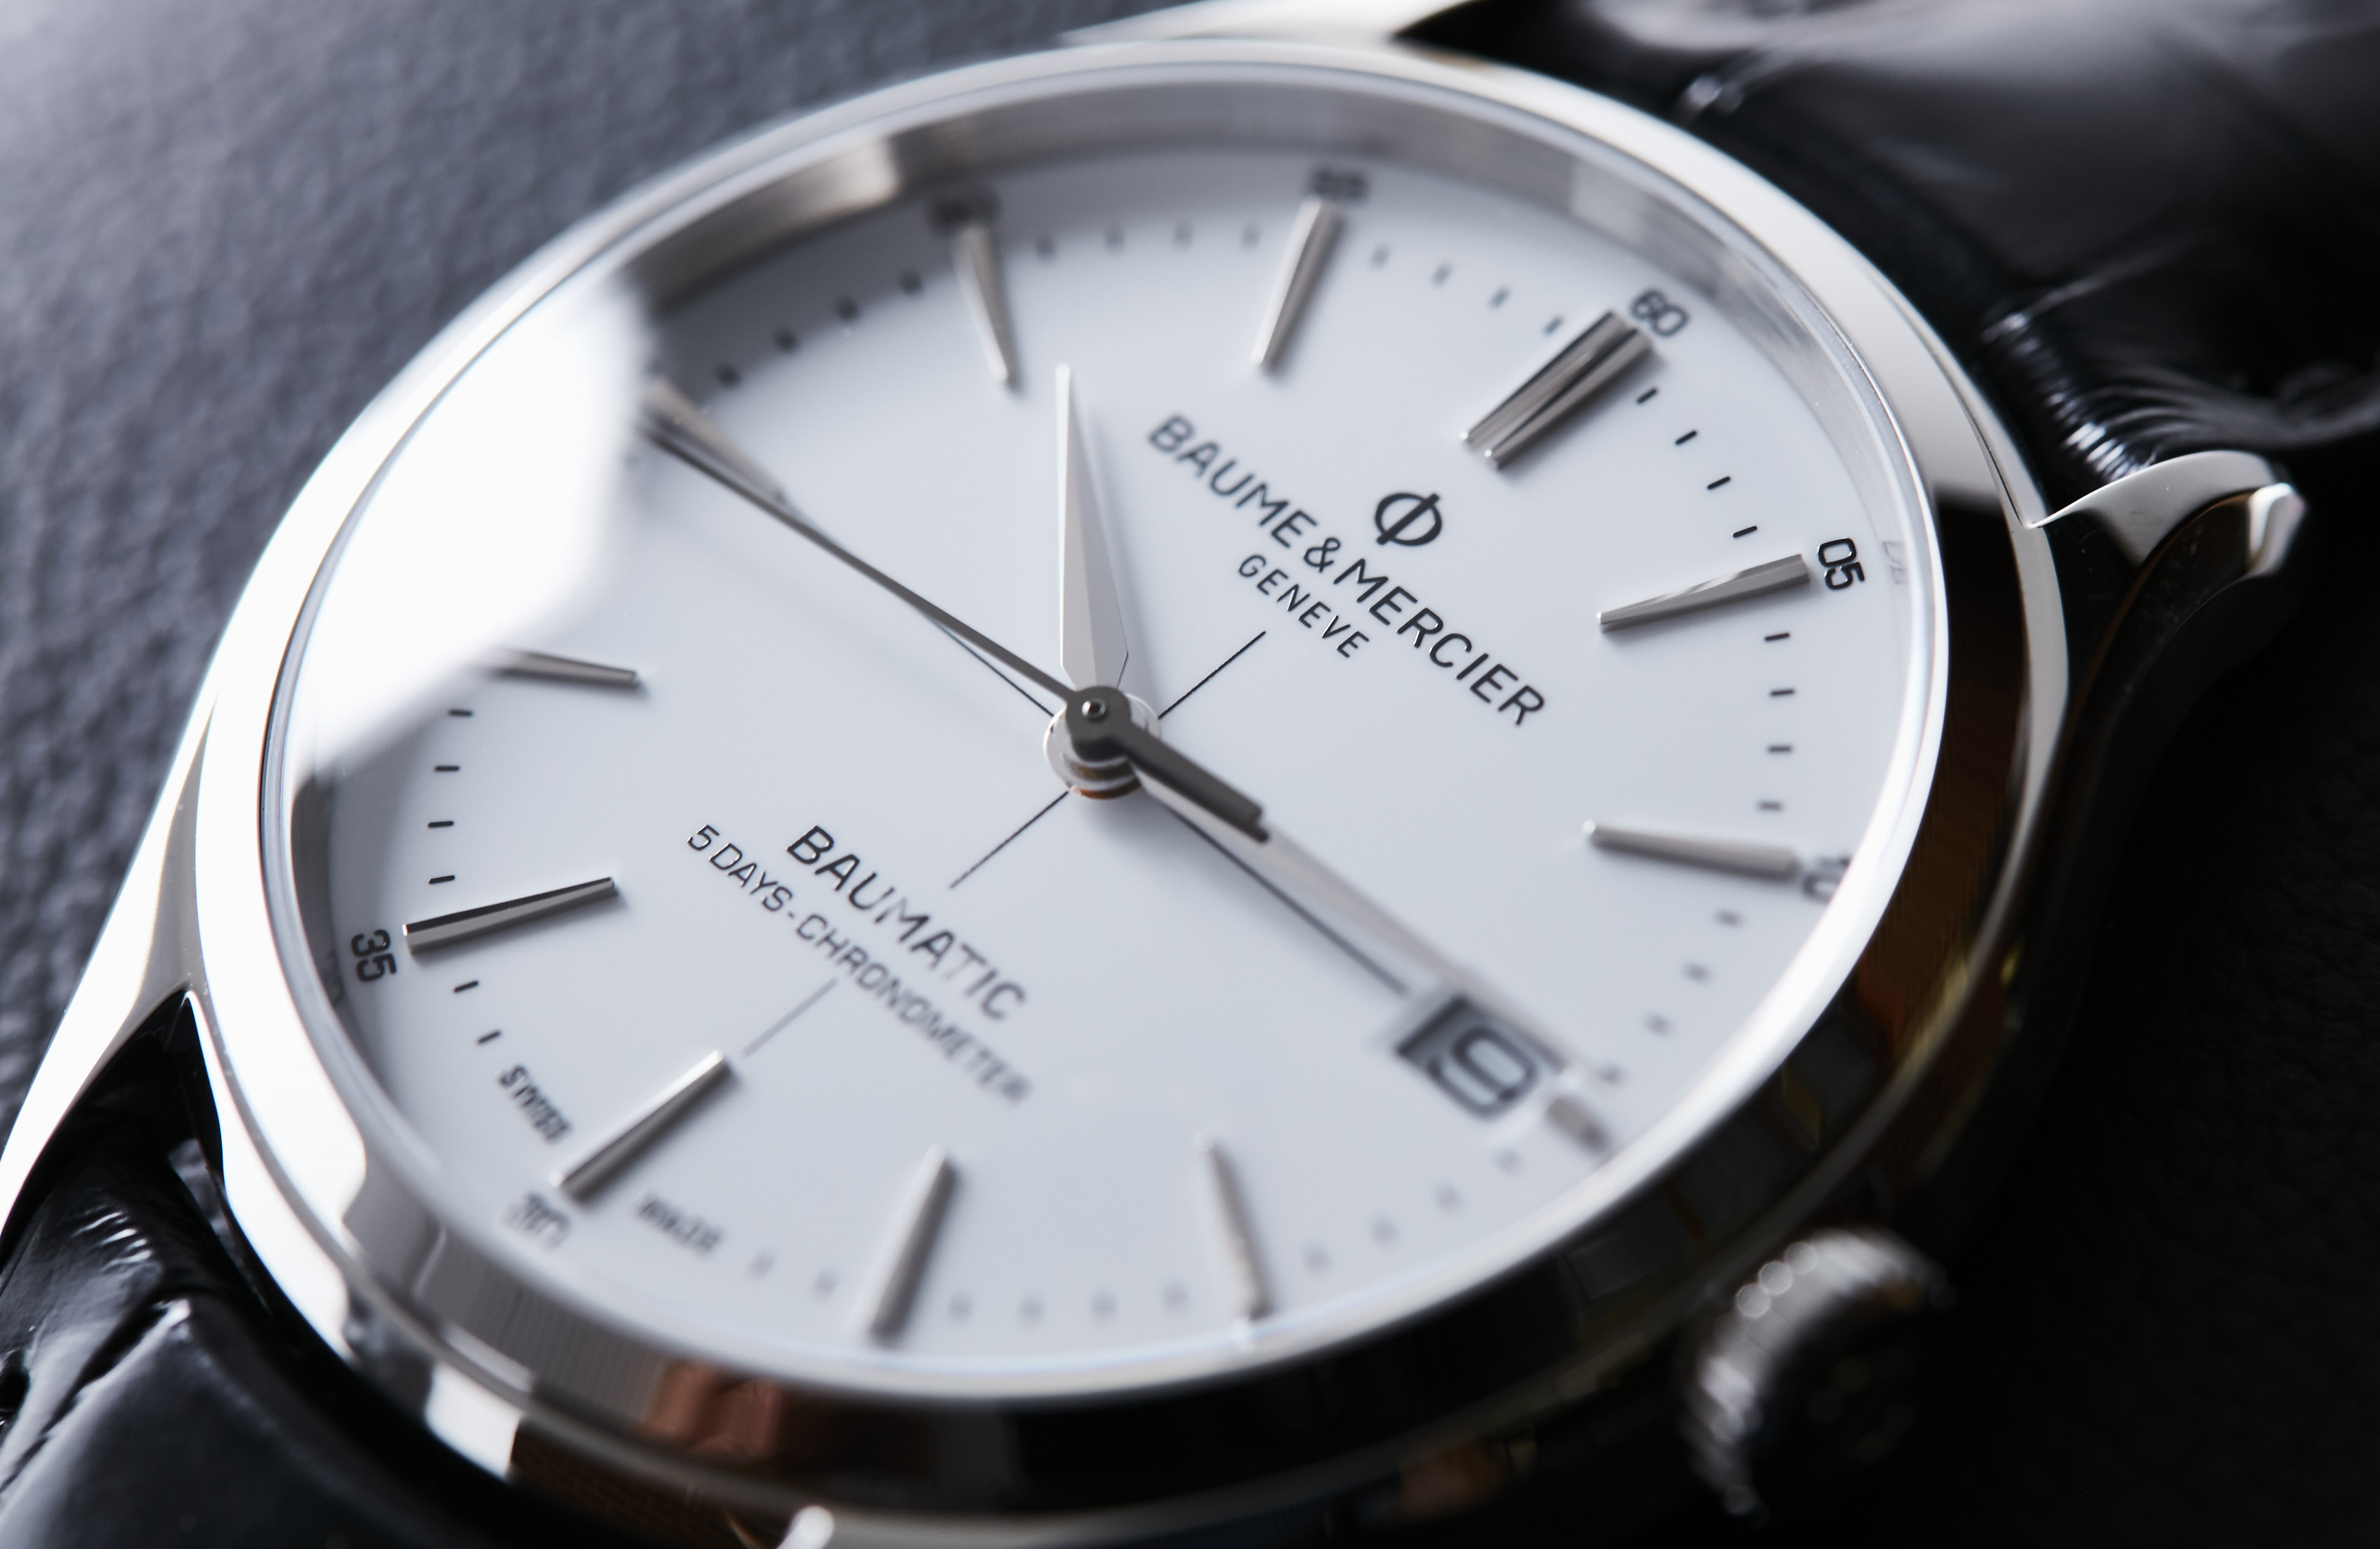 the Baume & Mercier Clifton Baumatic white dial